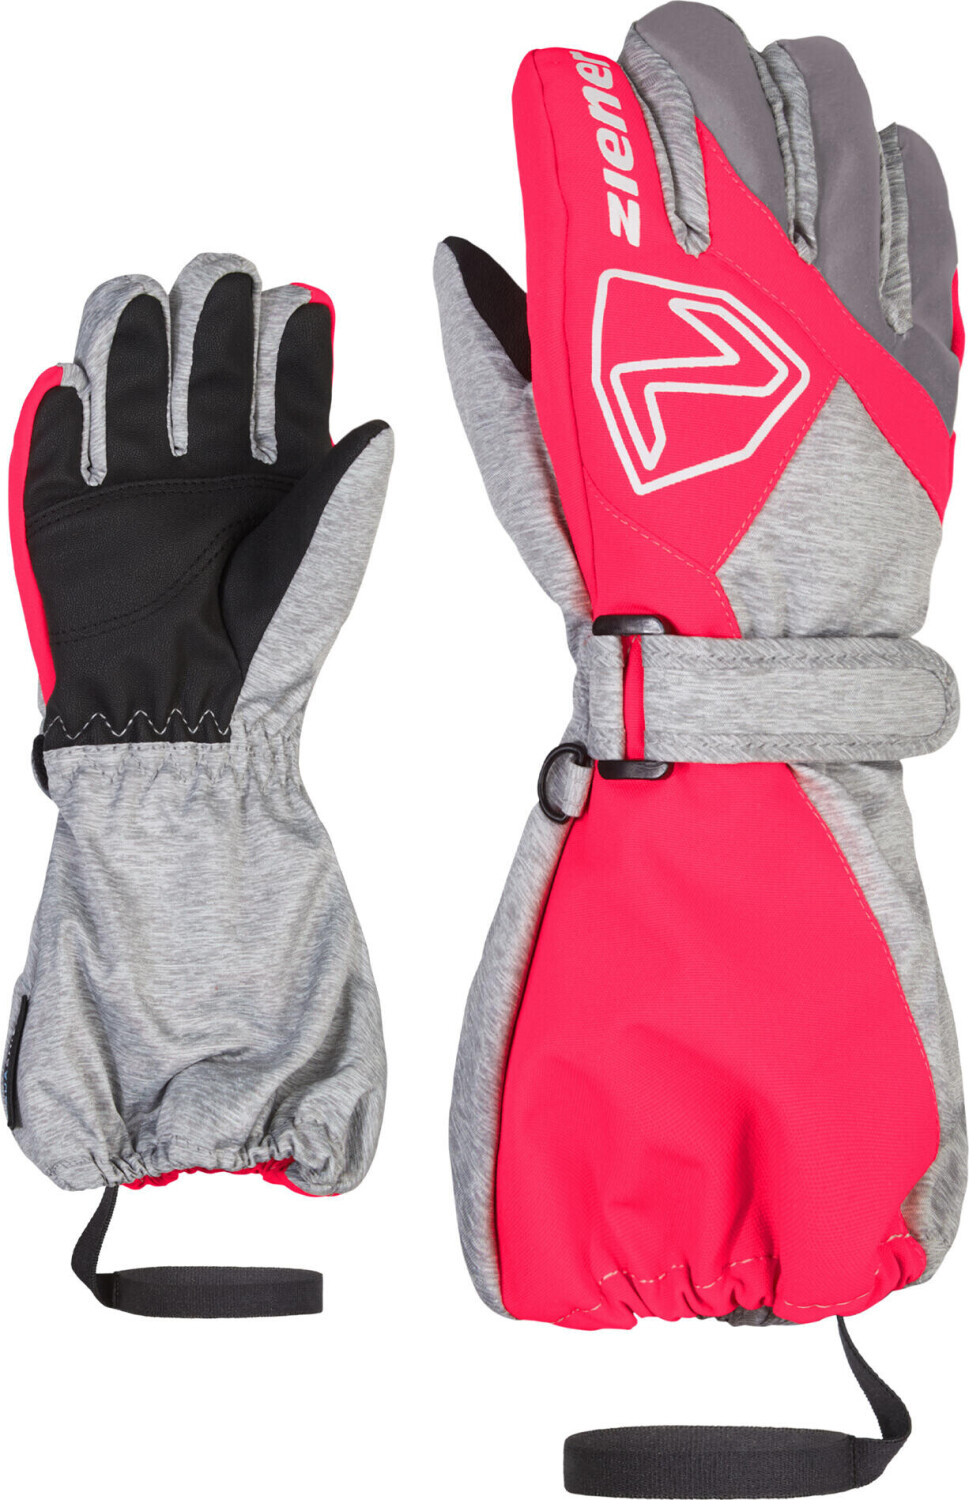 Ziener Lauro ASR Glove bei | Junior light Preisvergleich pink ab mélange.neon 29,90 €